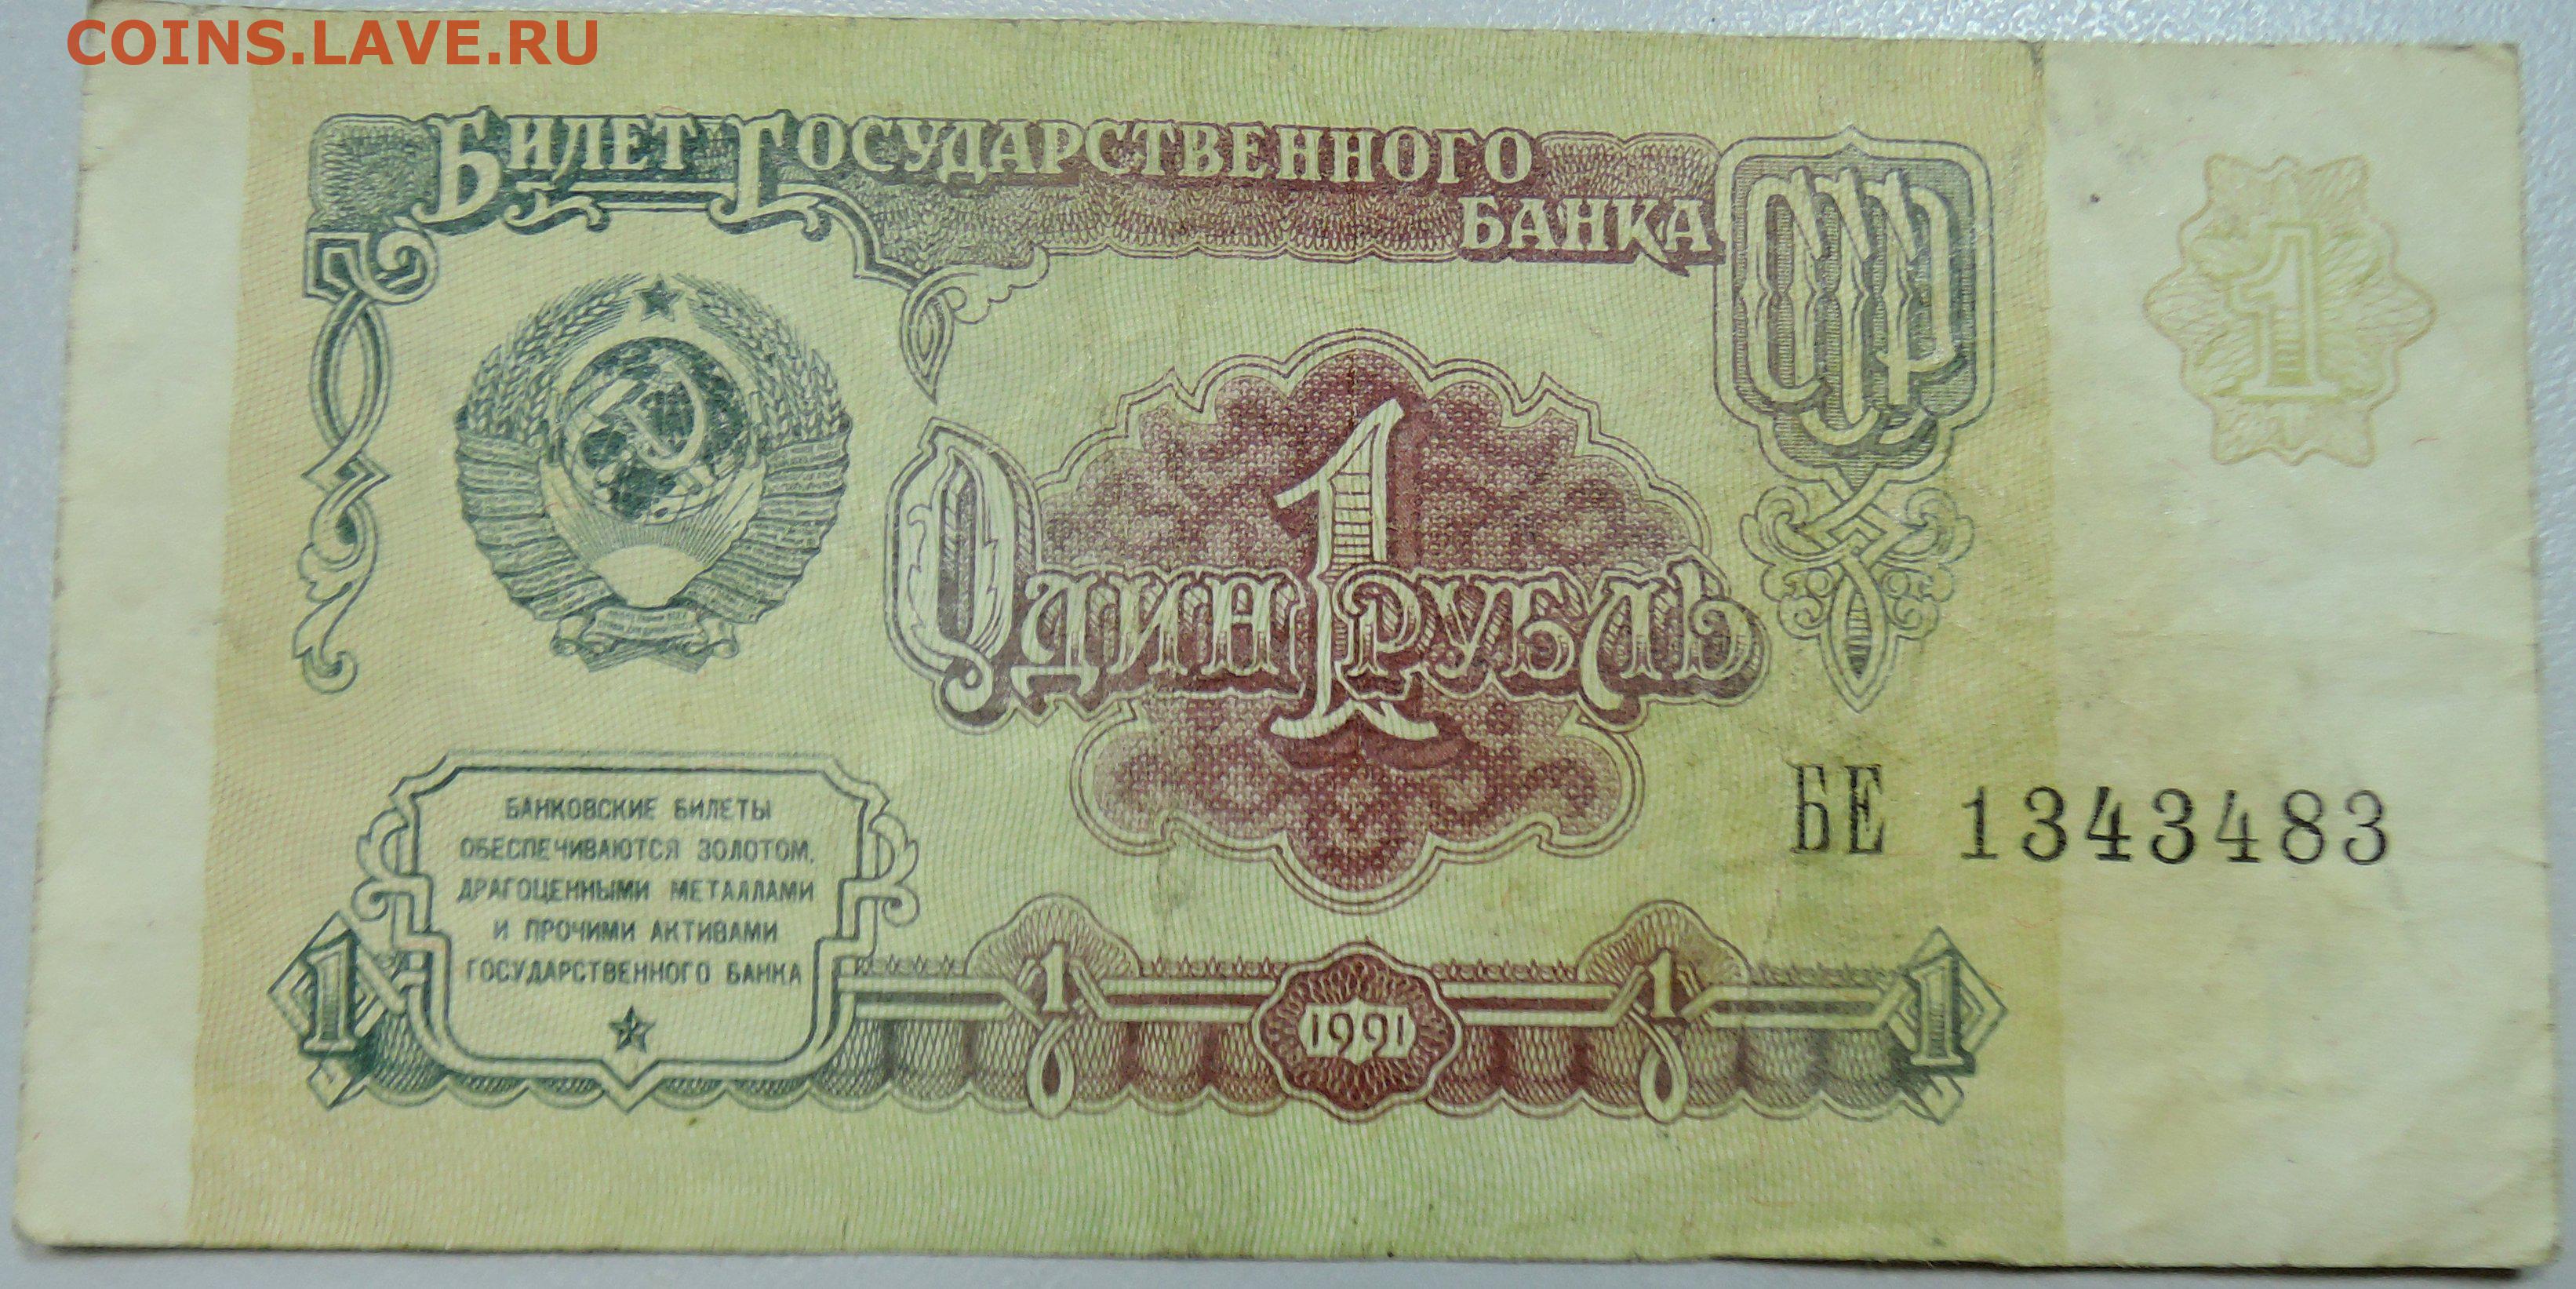 Сколько стоит 1 рубль купюрой. Банкноты СССР, 1961 один рубль. Купюра 1 рубль СССР 1991. Банкнота 1 рубль 1991 года. Купюра 1 рубль 1991.